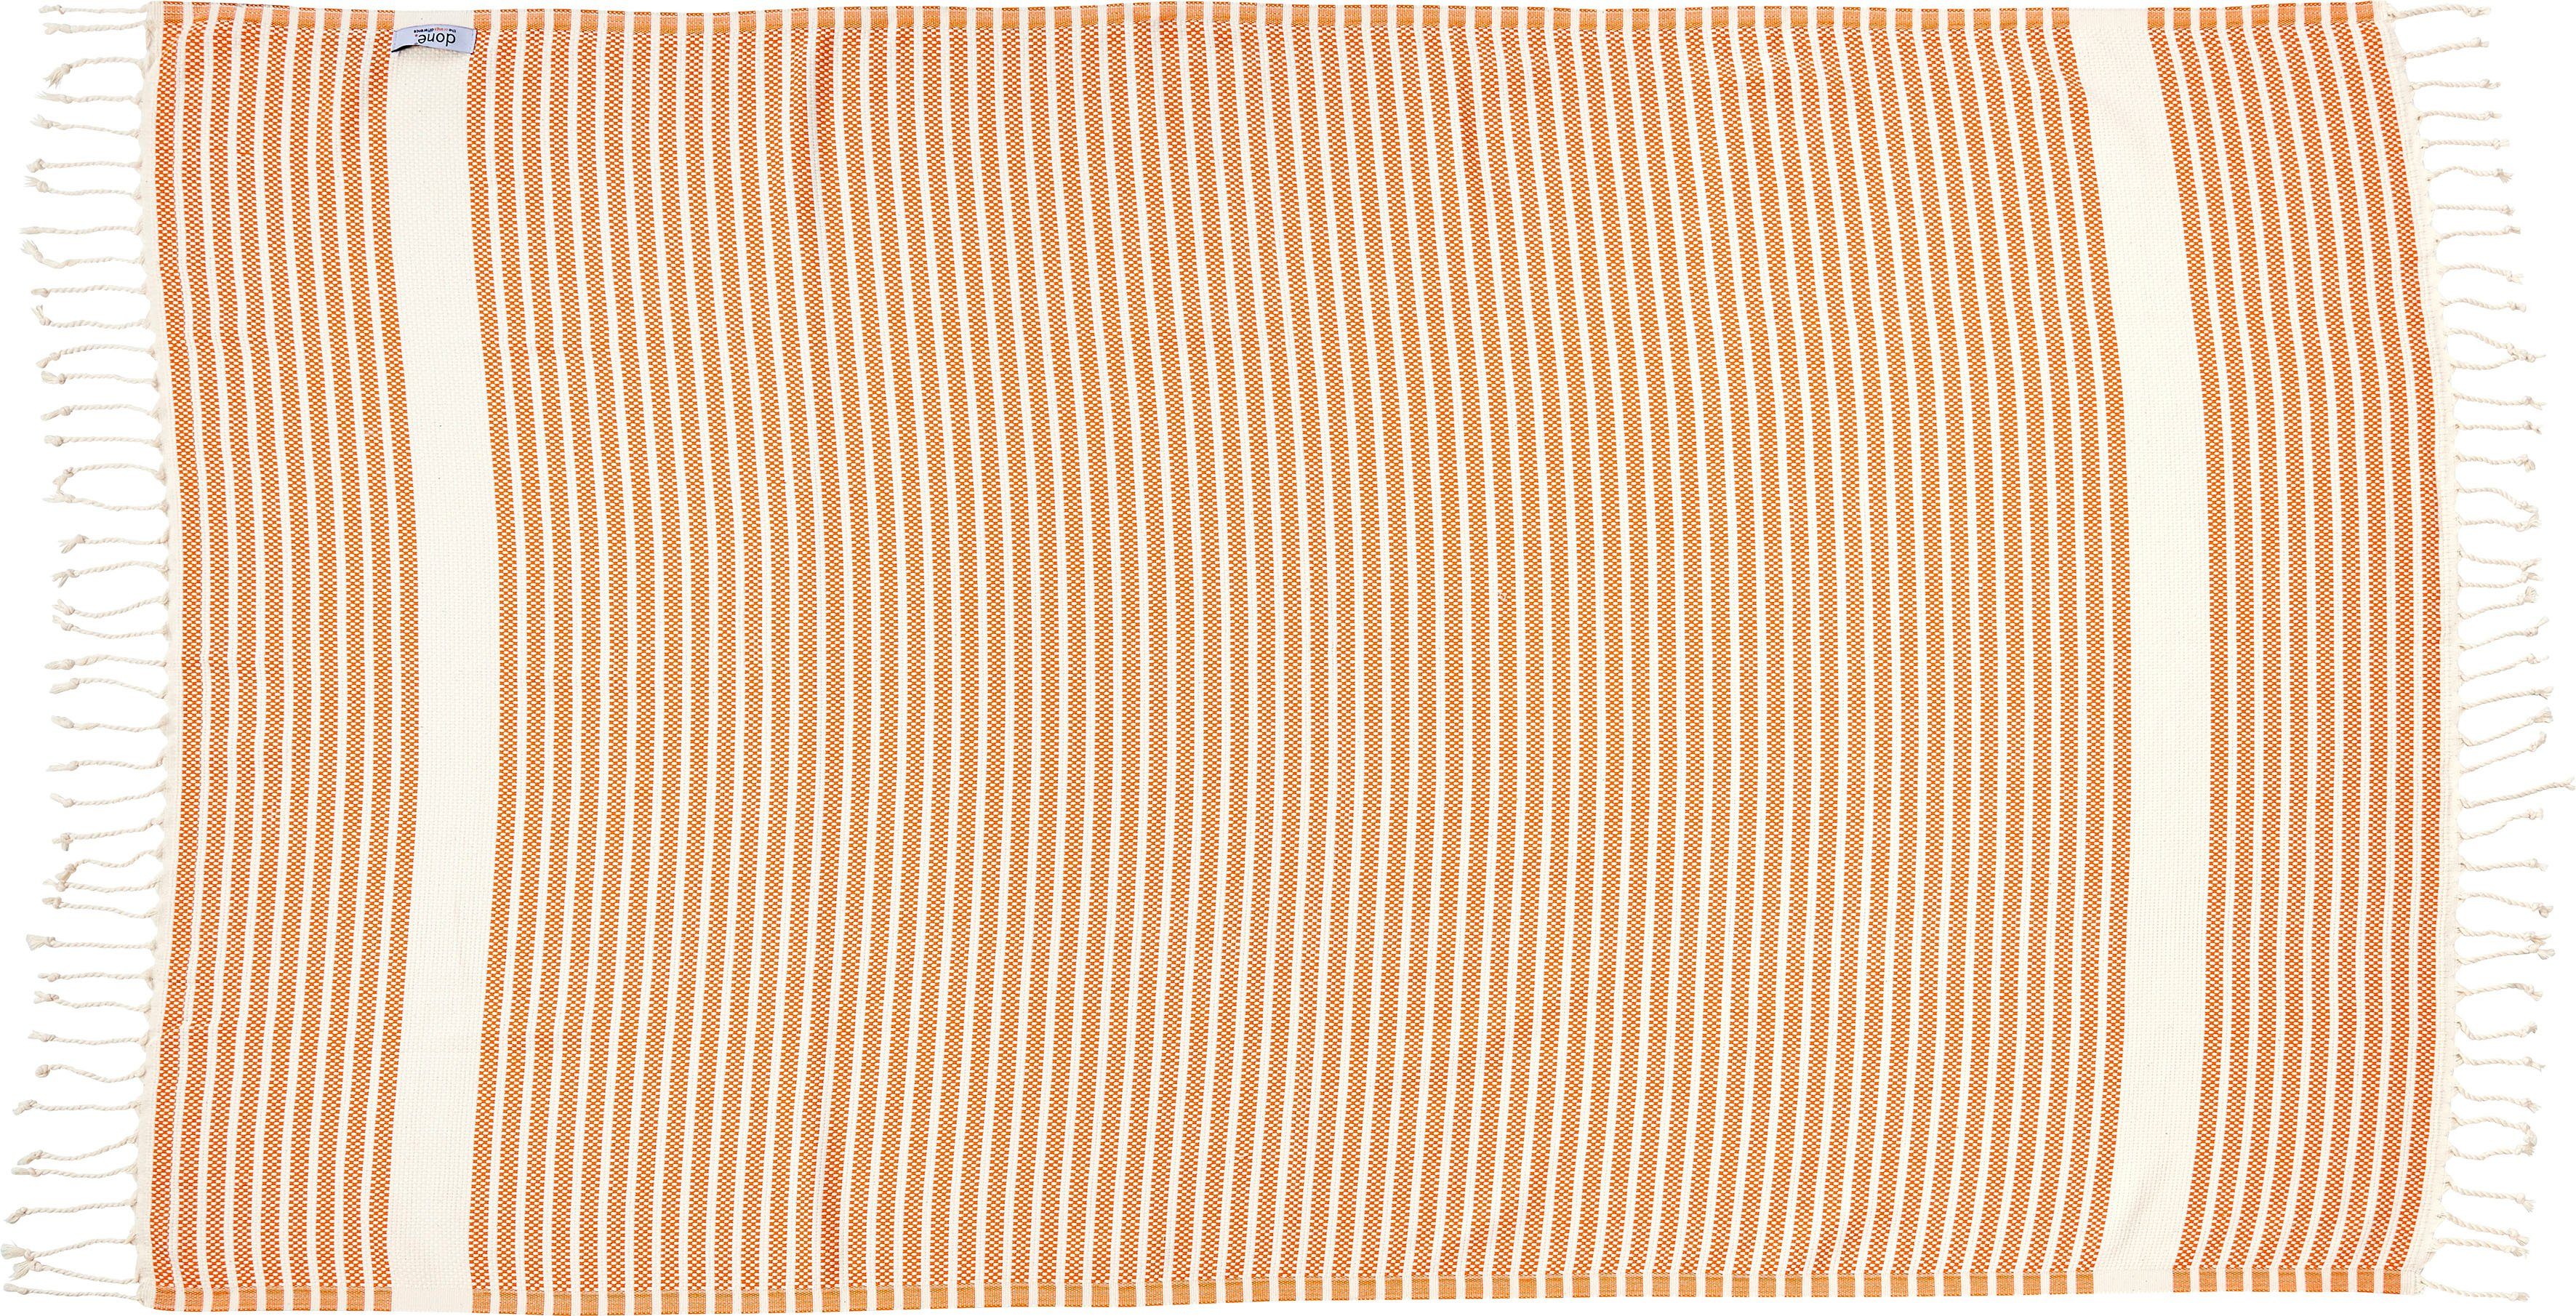 Plaid Lounge Stripes, done.®, Plaid Fransen mit Leichtes orange/beige geknoteten